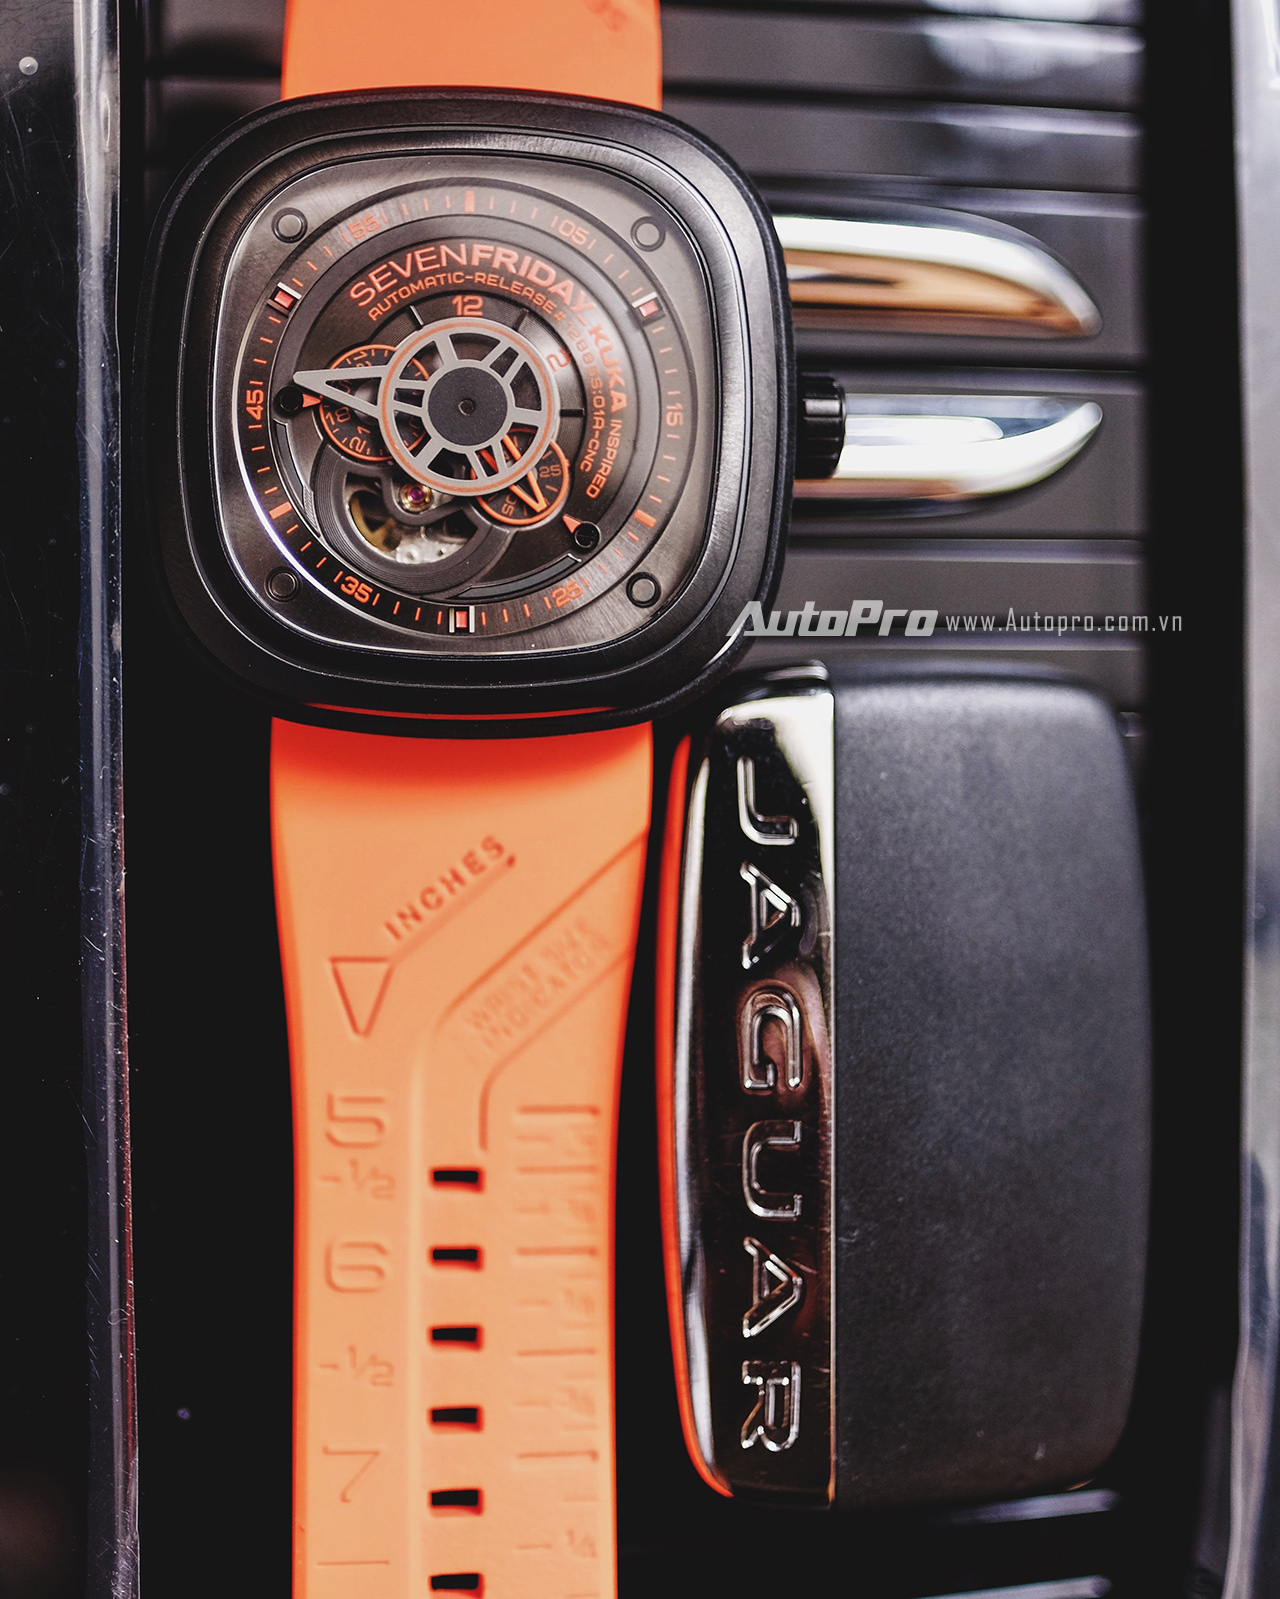 
Điểm nổi bật của KUKA còn đến từ chiếc dây cao su màu cam được thiết kế riêng cho chiếc đồng hồ này.Đây cũng là màu mới nhất được SevenFriday thêm vào bộ sưu tập dây của mình.
